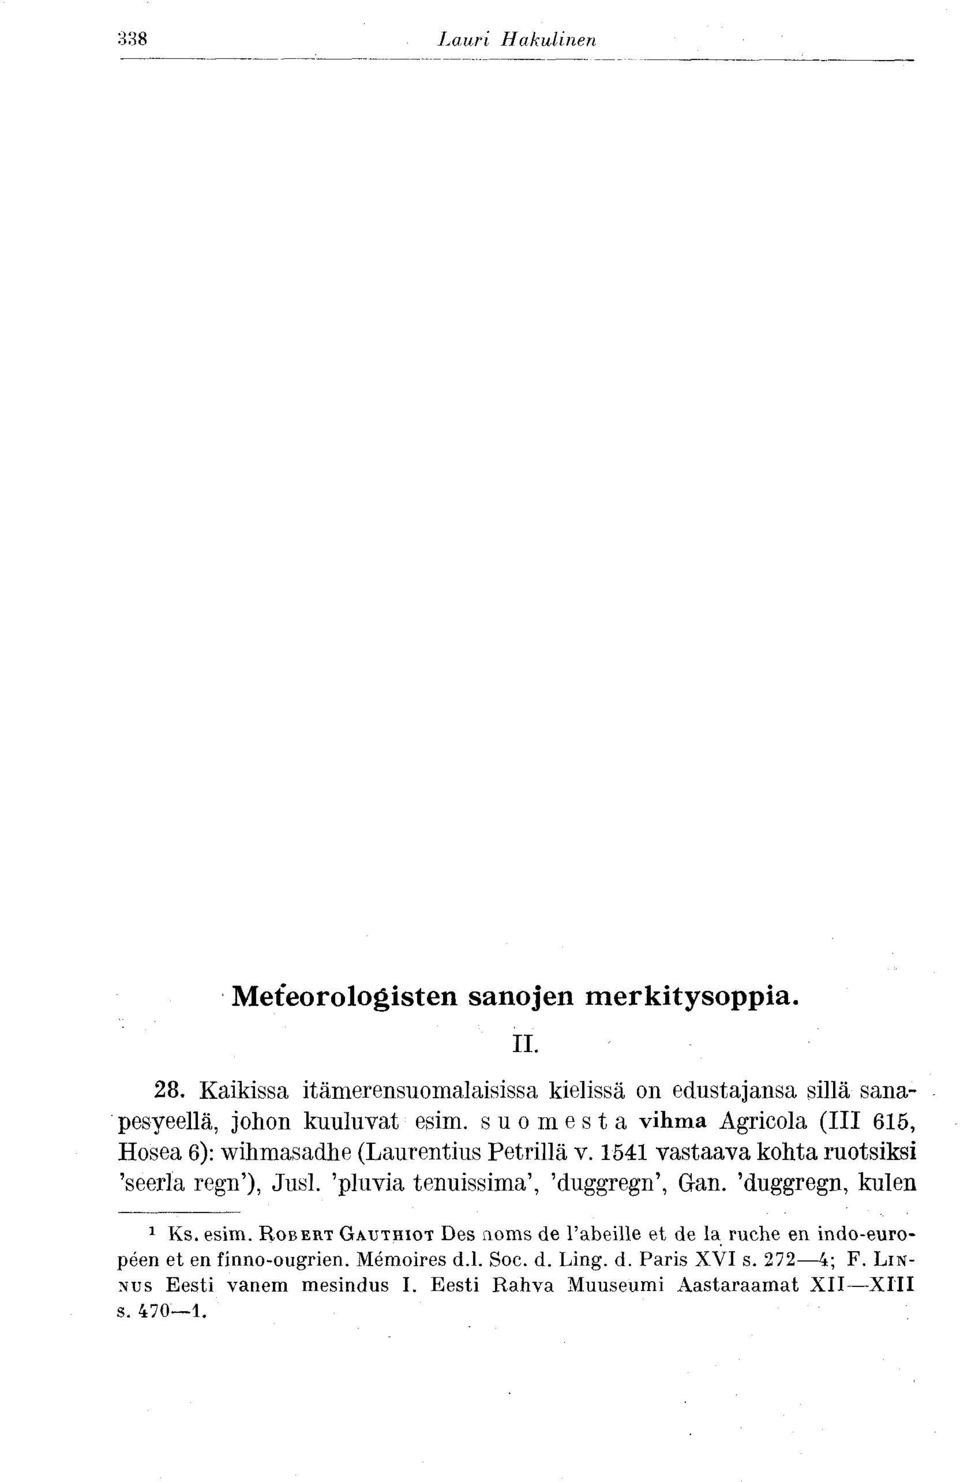 suomesta vihma Agricola (III 615, Hosea 6): wihmasadhe (Laurentius Petrillä v. 1541 vastaava kohta ruotsiksi 'seerla regn'), Jusl.